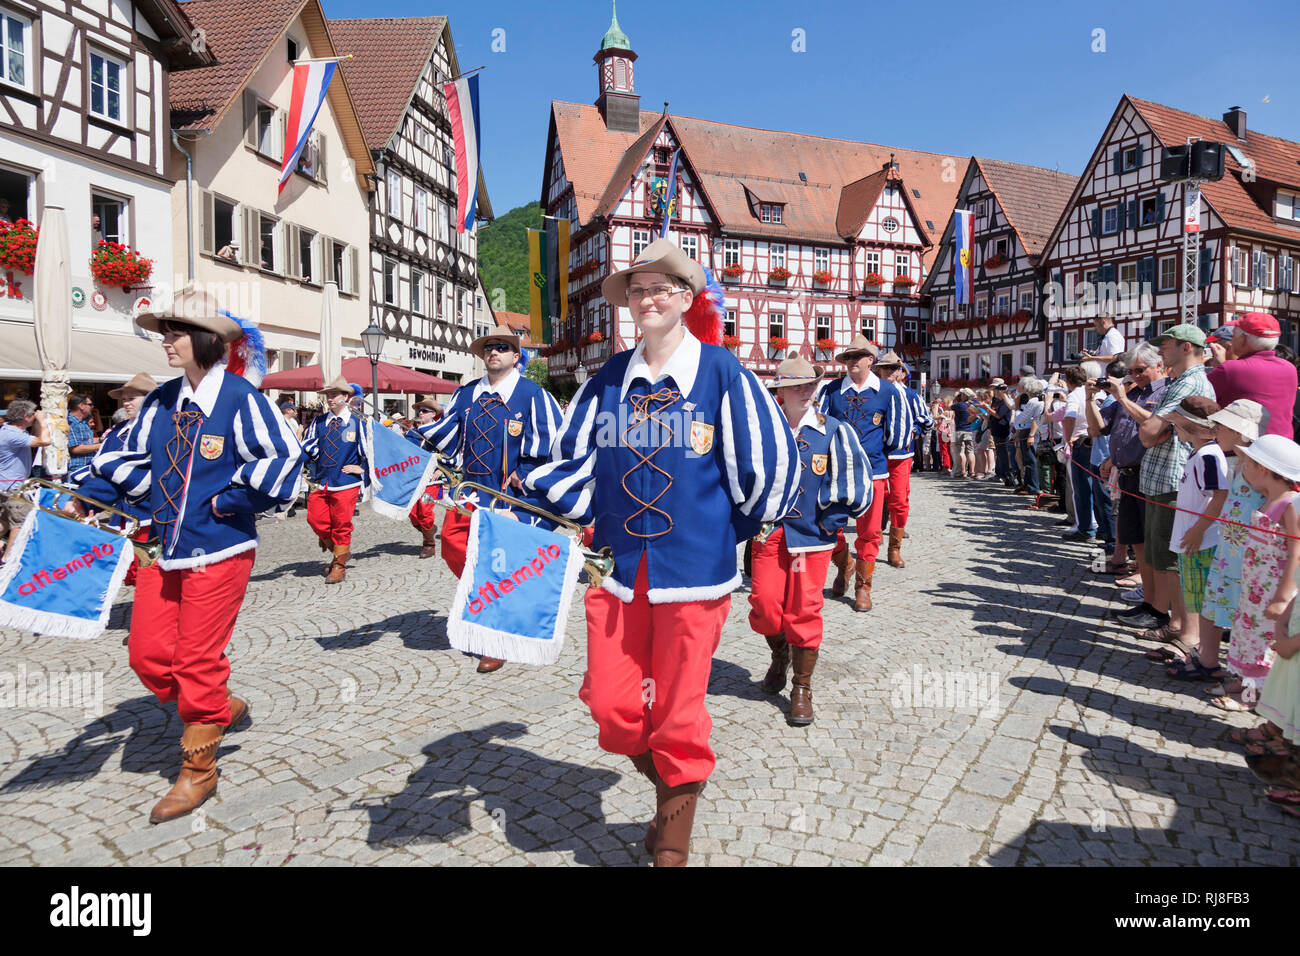 Fanfarenzug beim historischen Festumzug beim Uracher Schäferlauf, Bad Urach, Baden-Württemberg, Deutschland Foto Stock